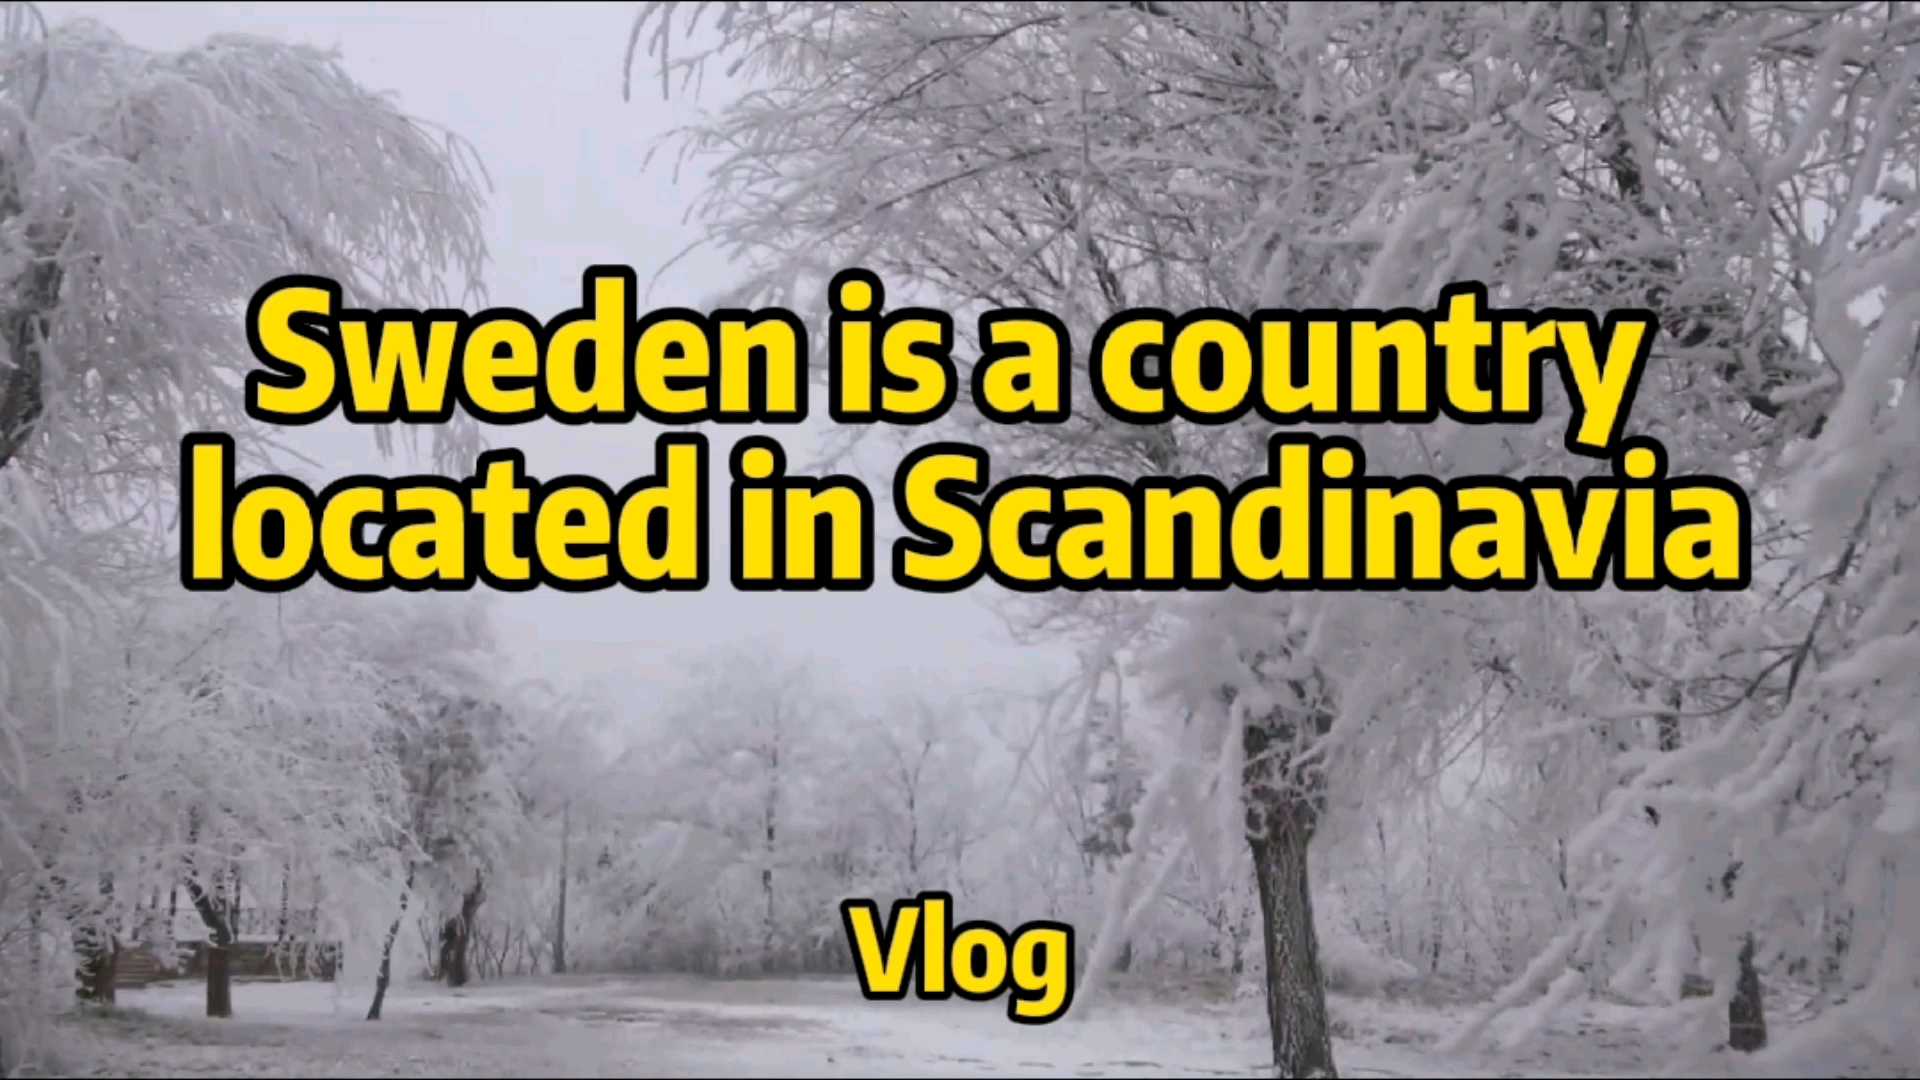 北欧面积最大国家—瑞典